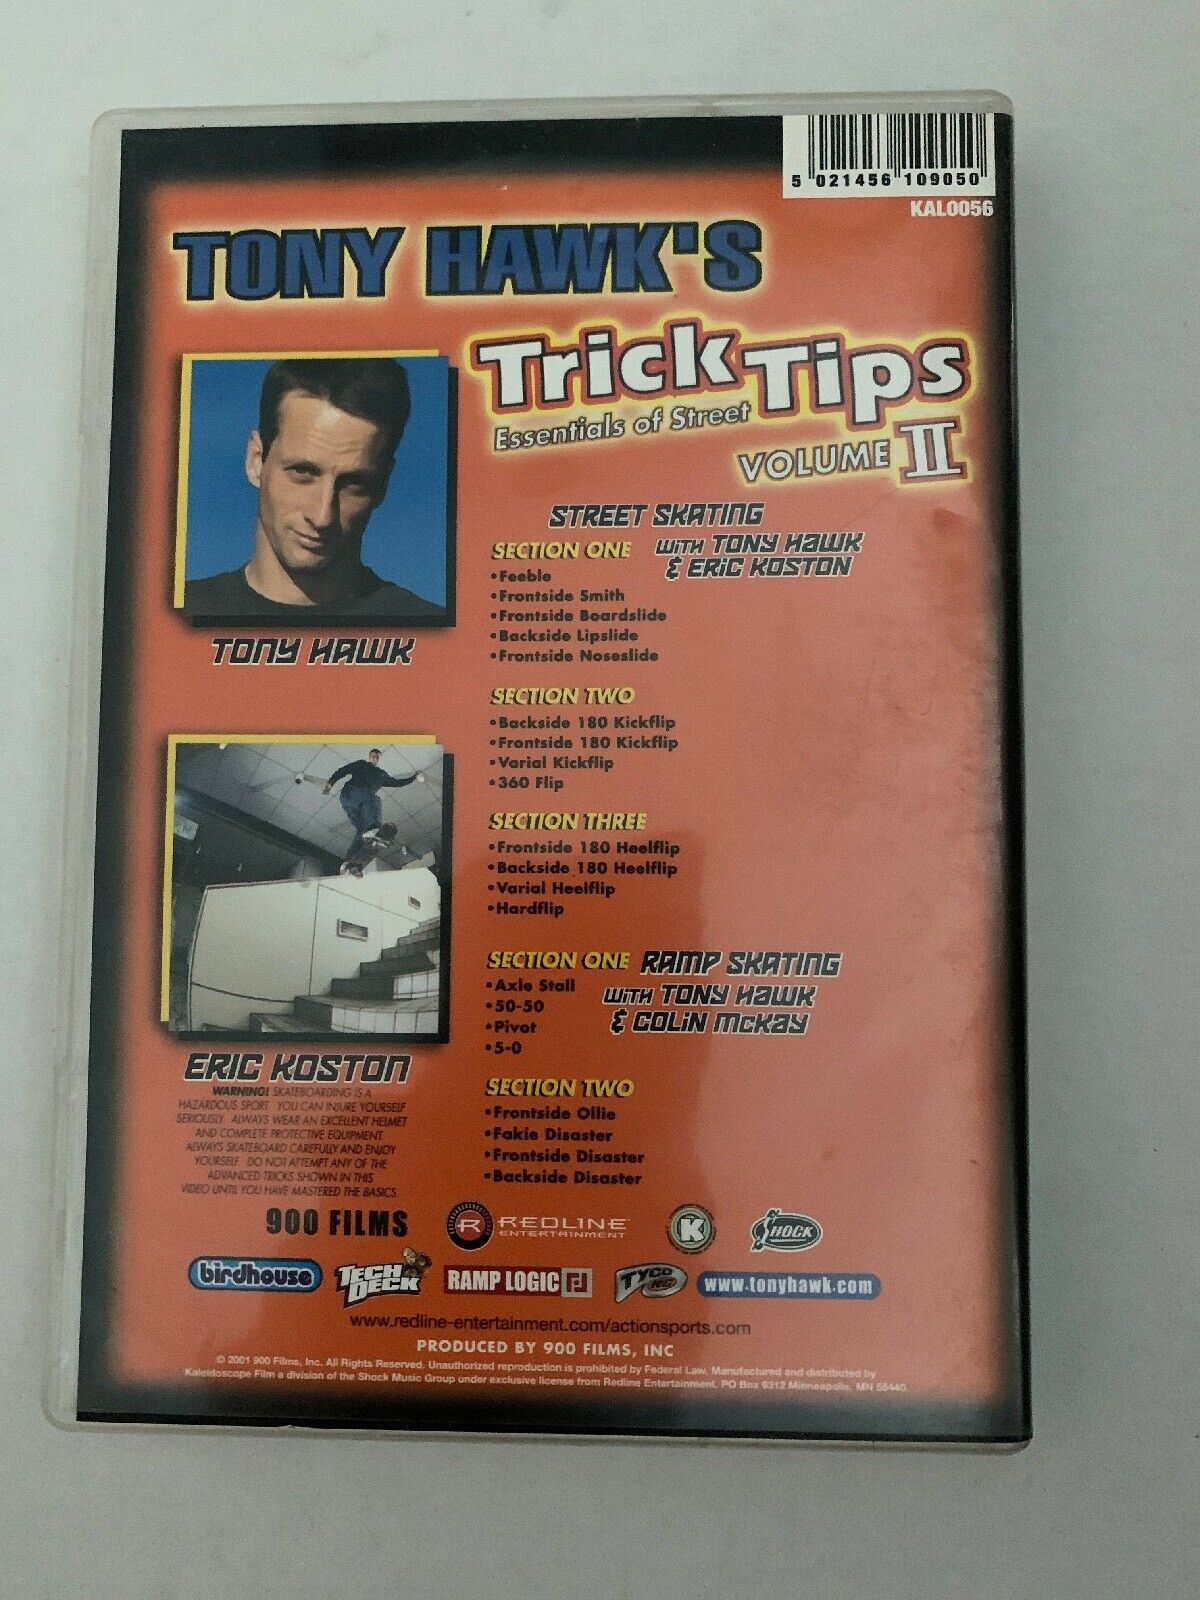 Tony Hawk's Trick Tips  Volume 2 - Essentials of the Street DVD Region FREE